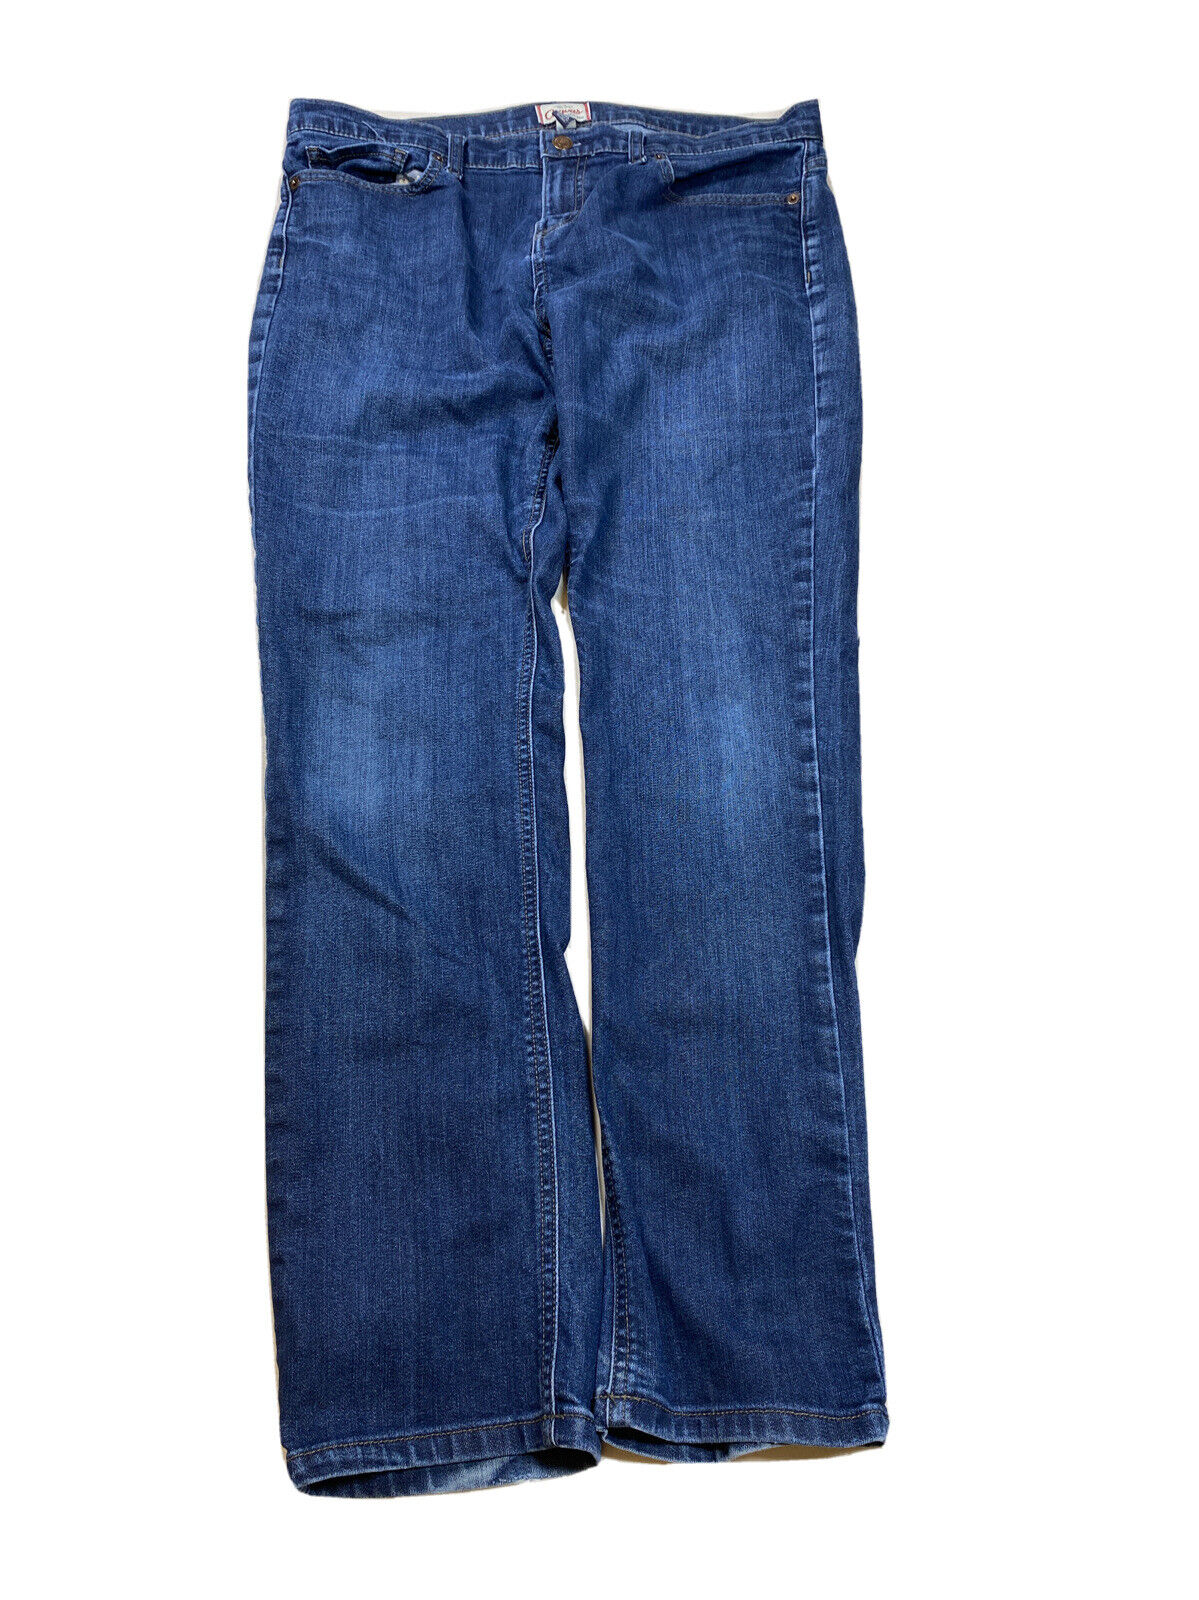 Lands' End Women's Dark Wash Canvas Denim Pin Straight Jeans - 32